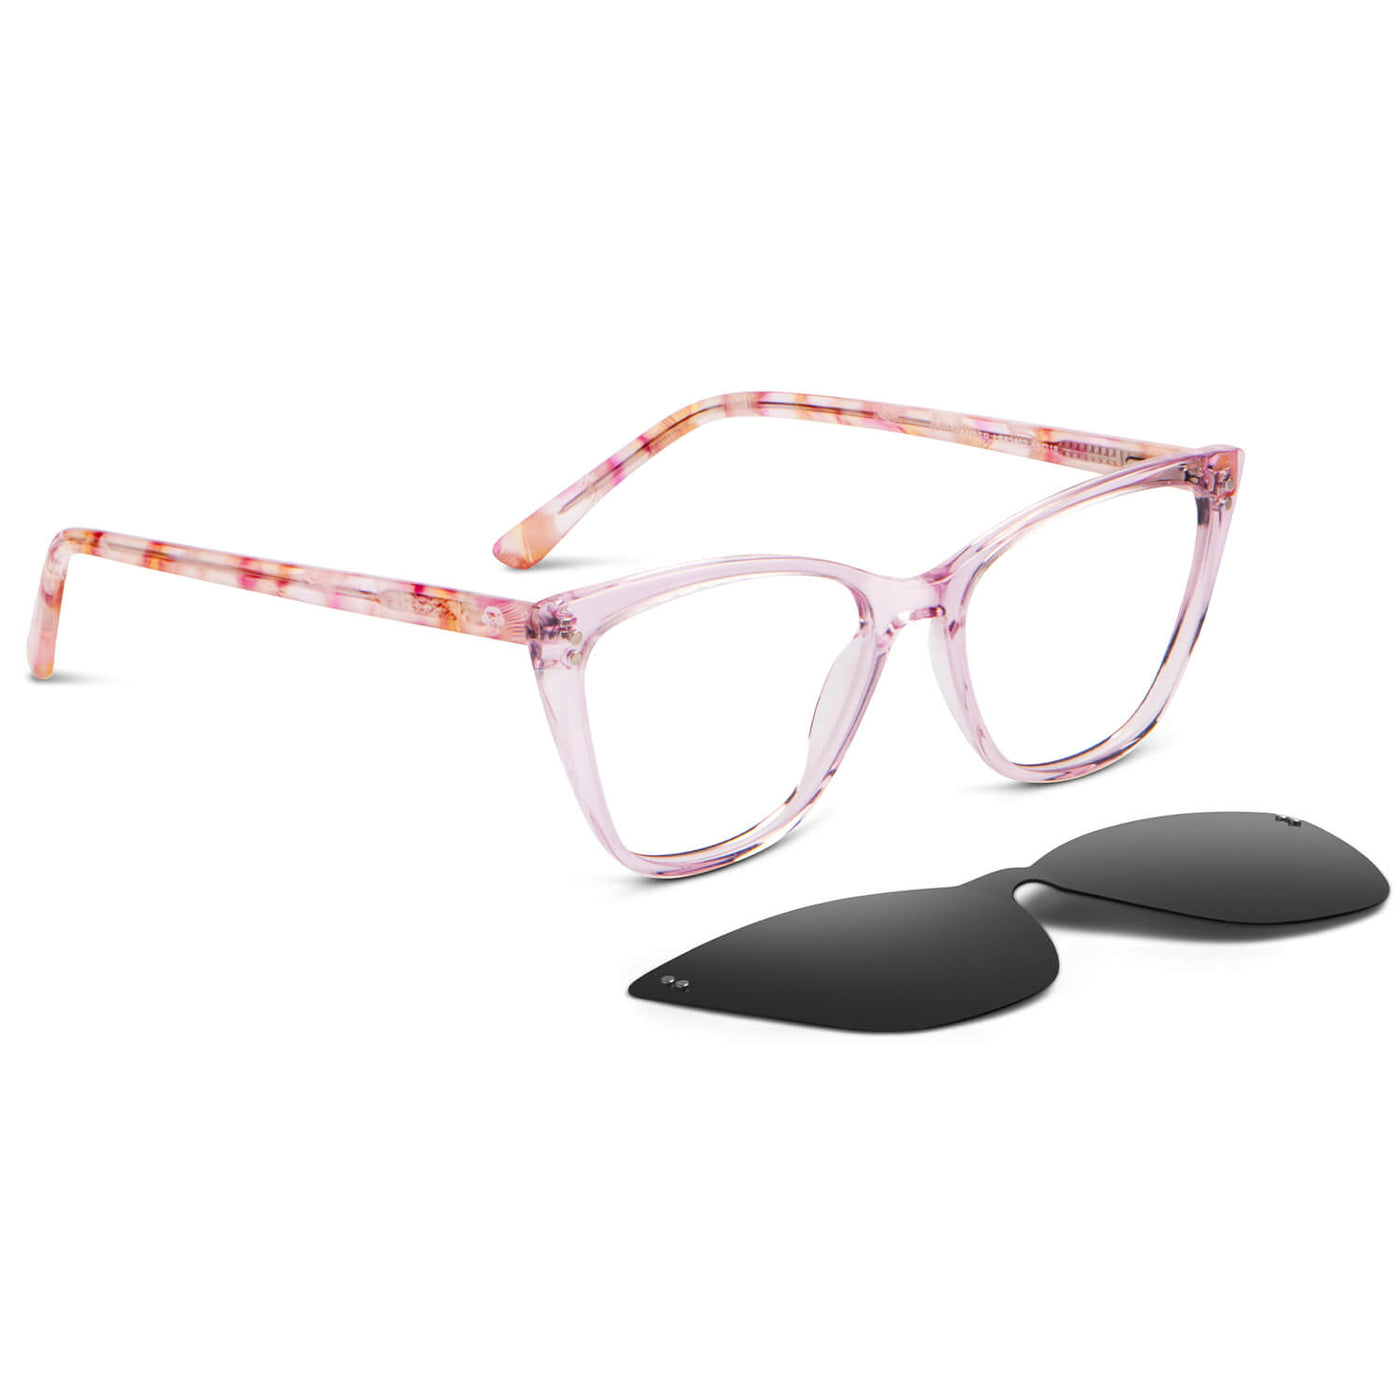 anteojos opticos agatados de mujer con clip de sol polarizado con sobrelente lentes con receta rosado